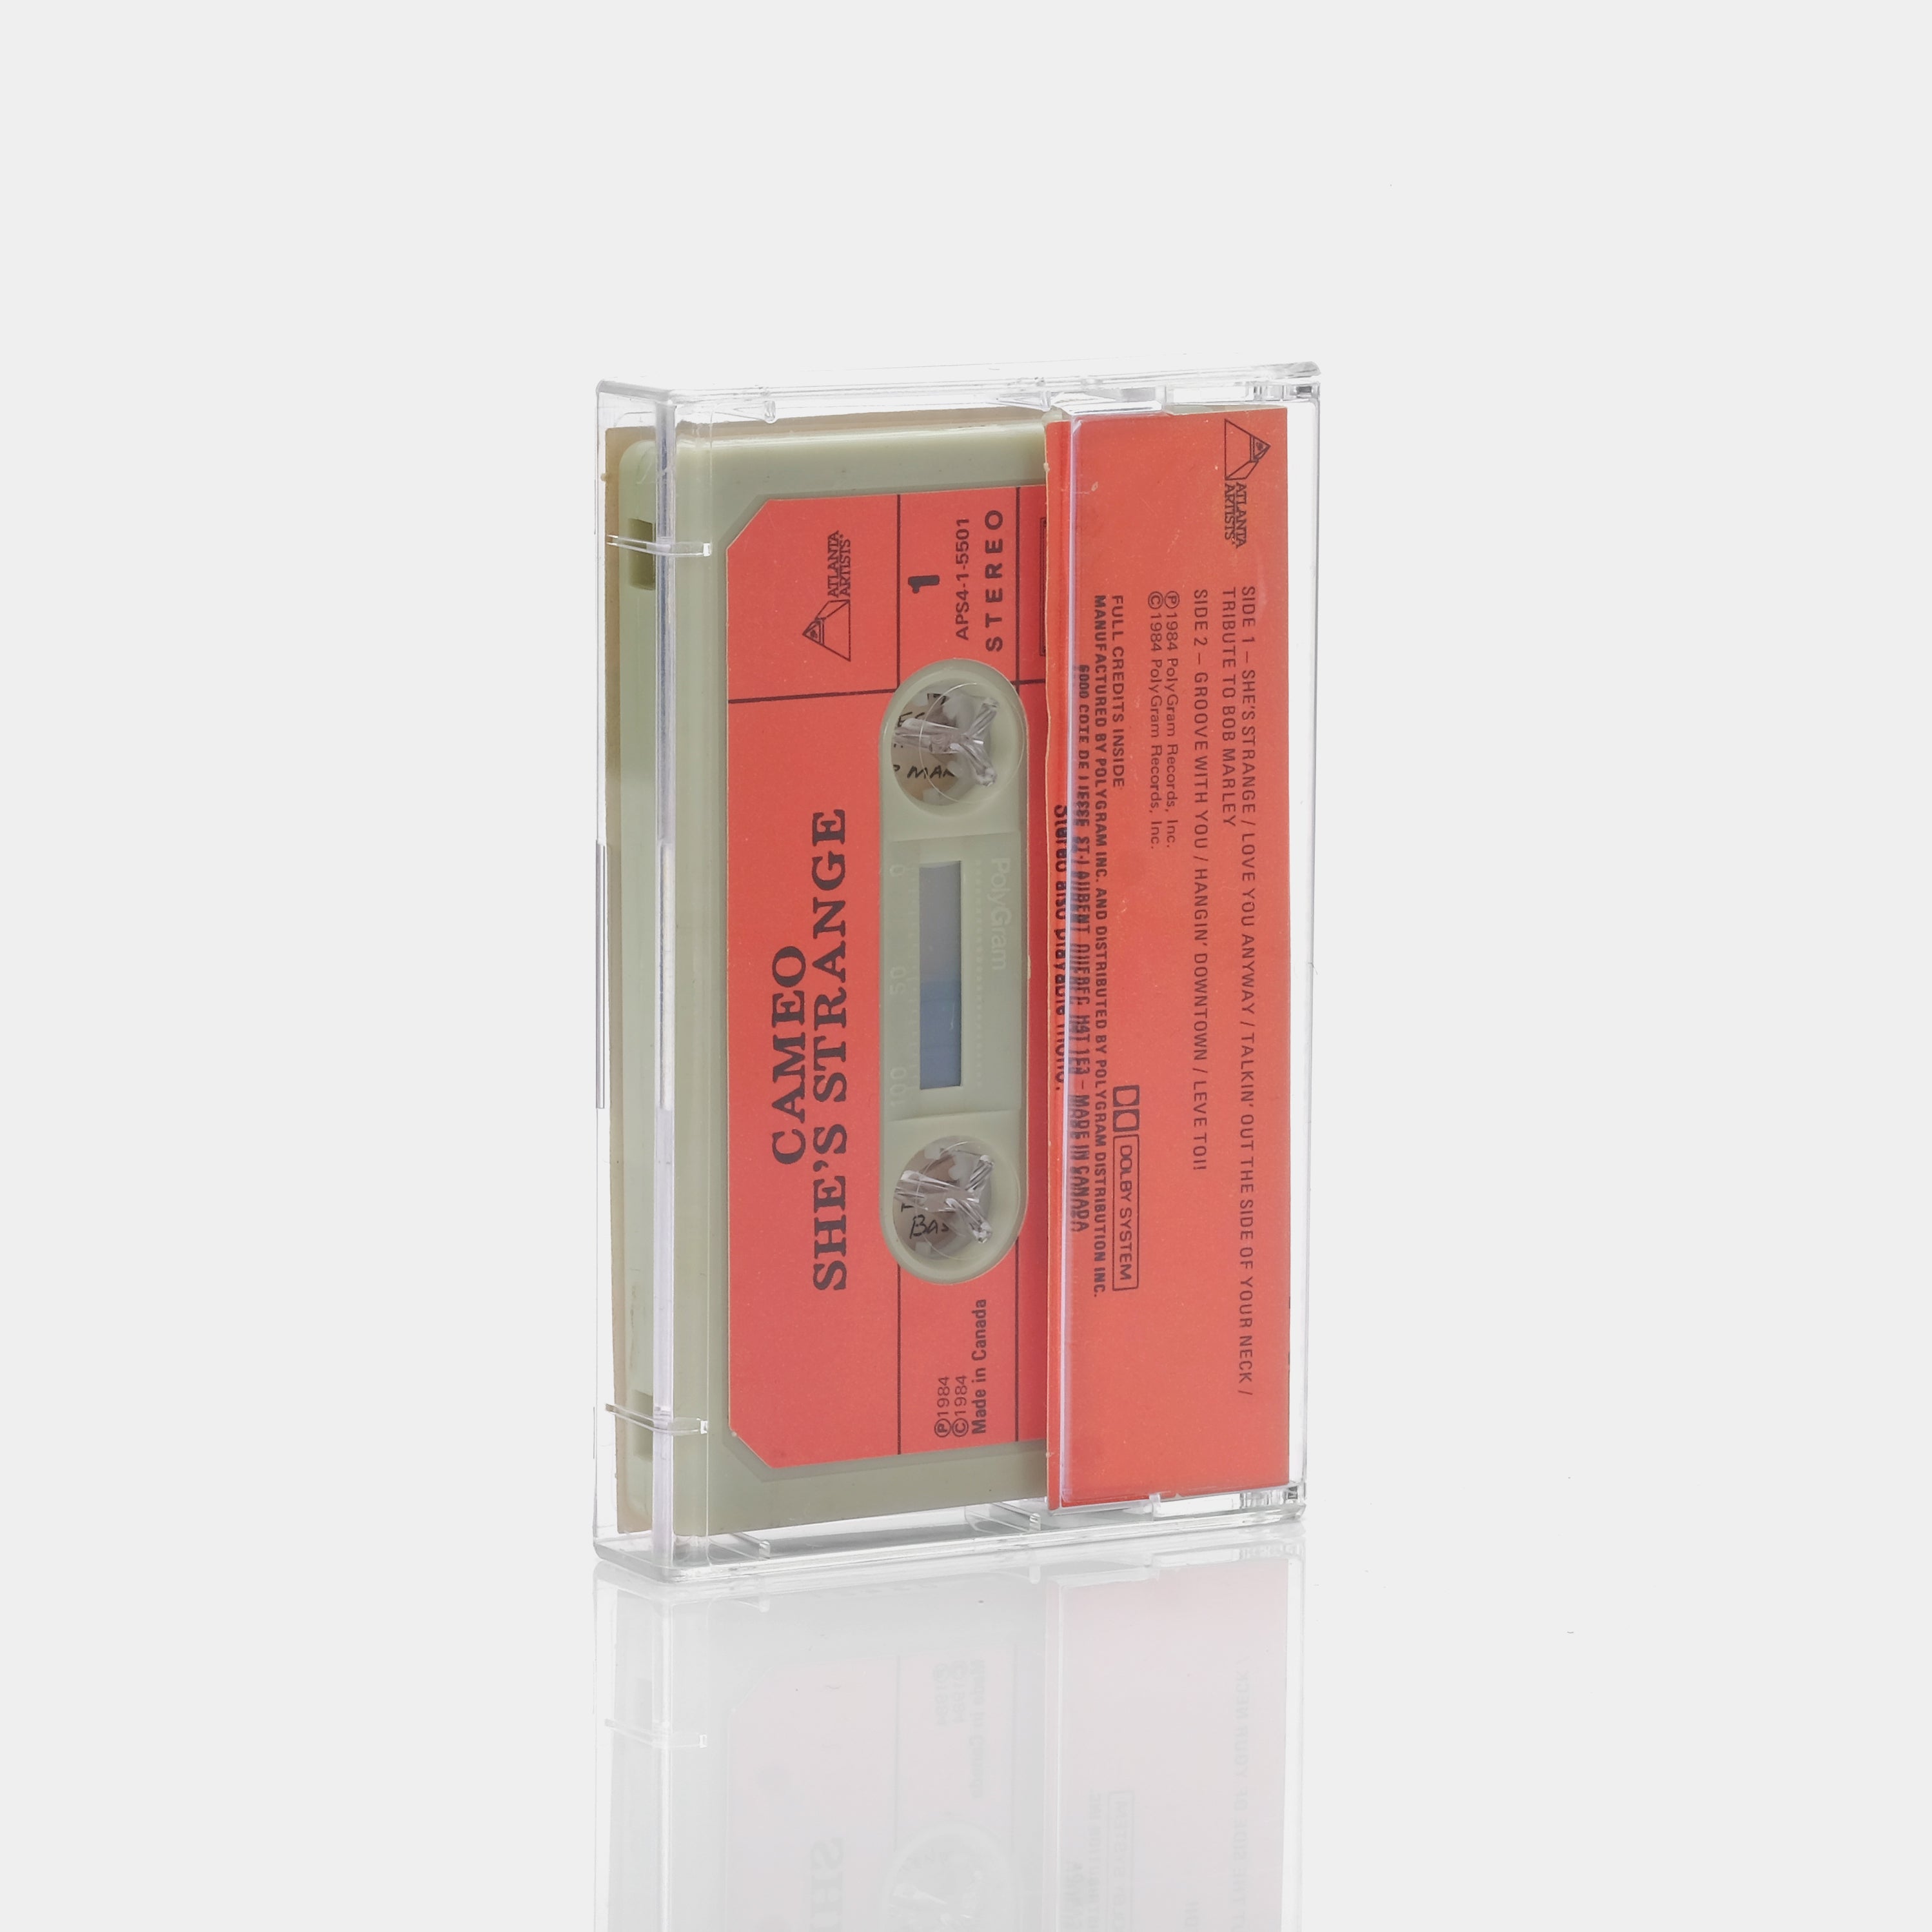 Cameo - She's Strange Cassette Tape